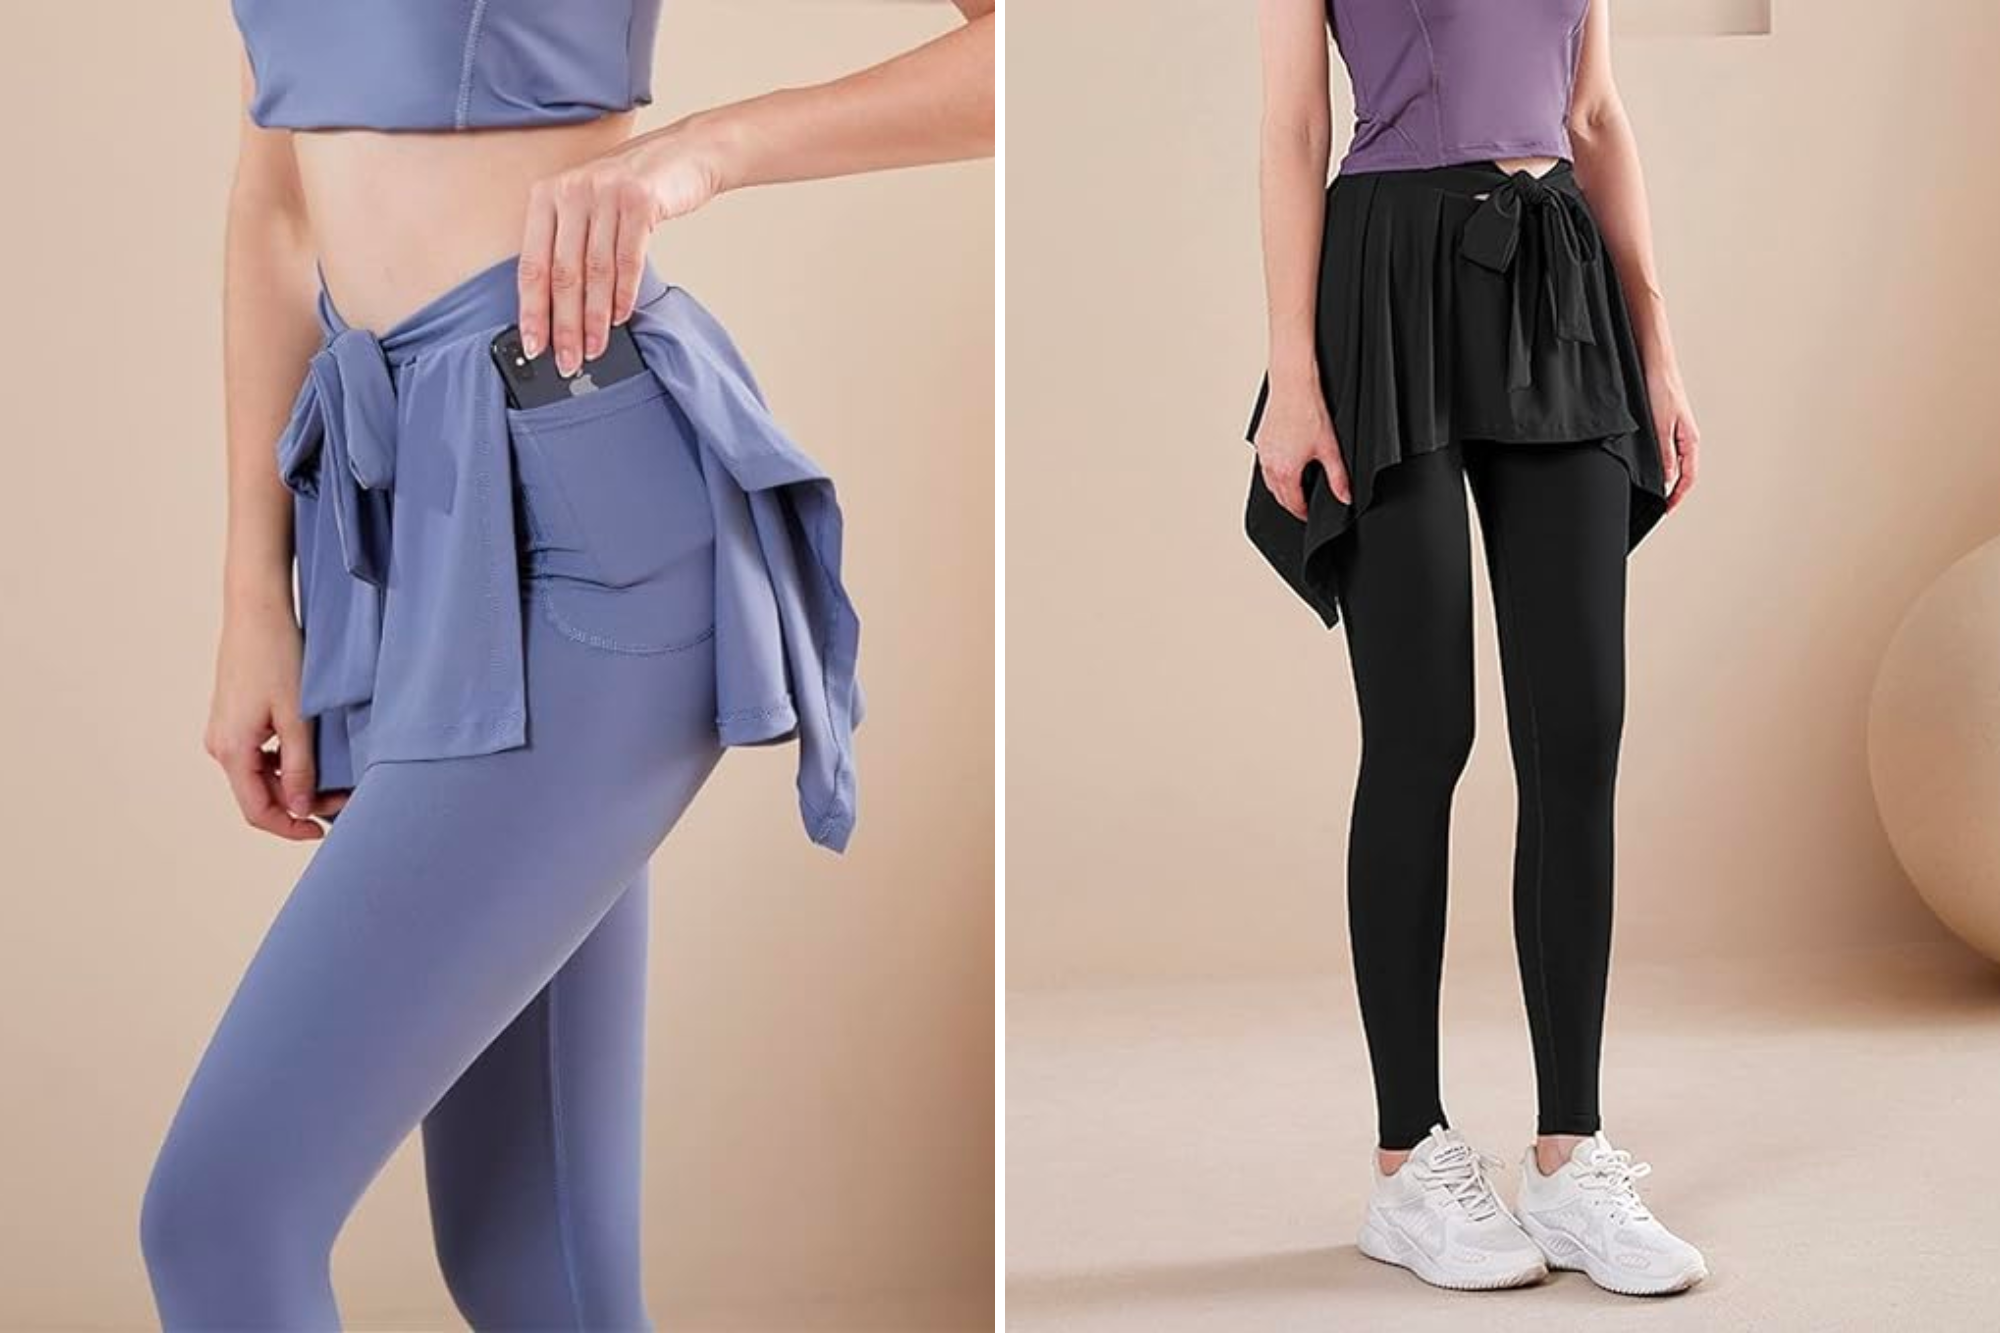 Buy Overskirt for Leggings / Yoga Skirt / Multi Purpose Tube / Leggins  Cover up / Tube Skirt / Workout Skirt Cover / Gift for Her by Aurorawear  Online in India - Etsy